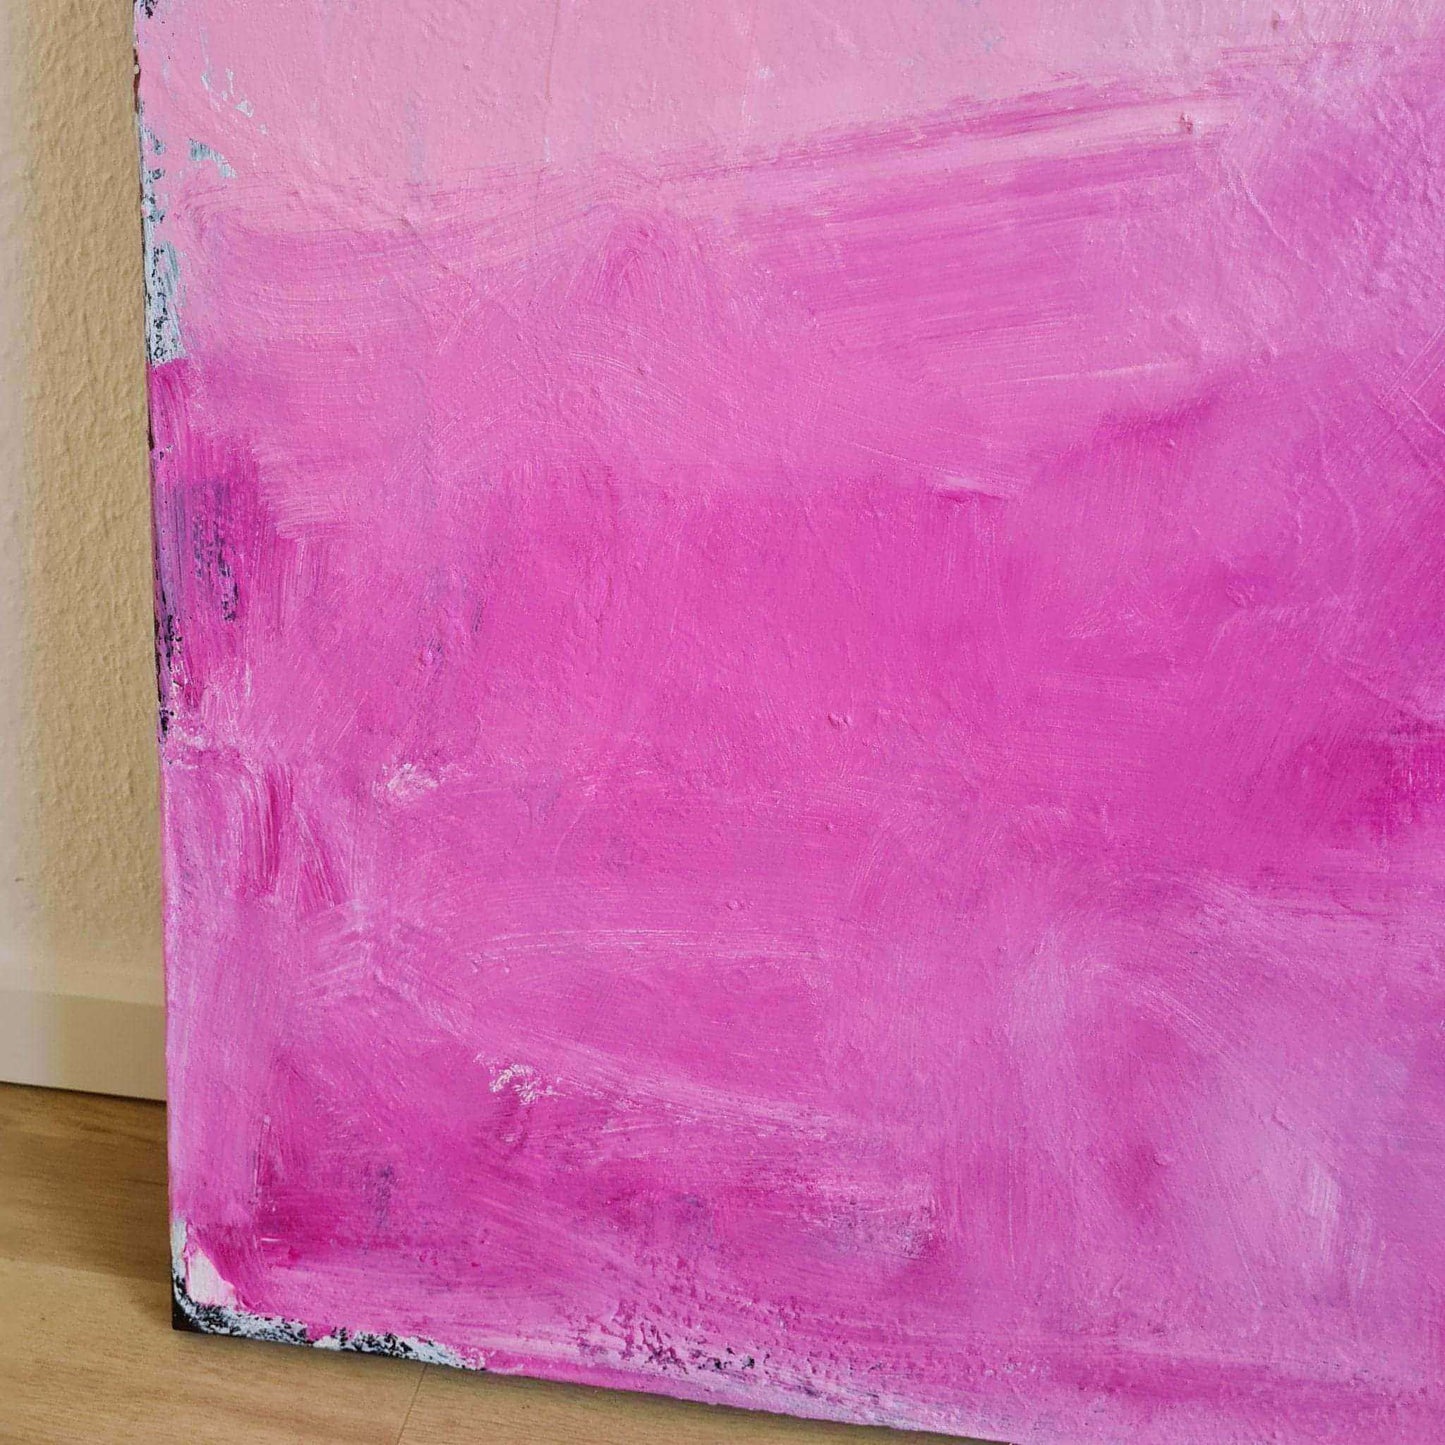 "Frei sein" - Abstraktes Gemälde in Weiß und Pink auf 100 x 100 cm Leinwand Abstrakte Bilder & moderne Auftragsmalerei, abstrakte große bilder online kaufen, Auftrags Malere